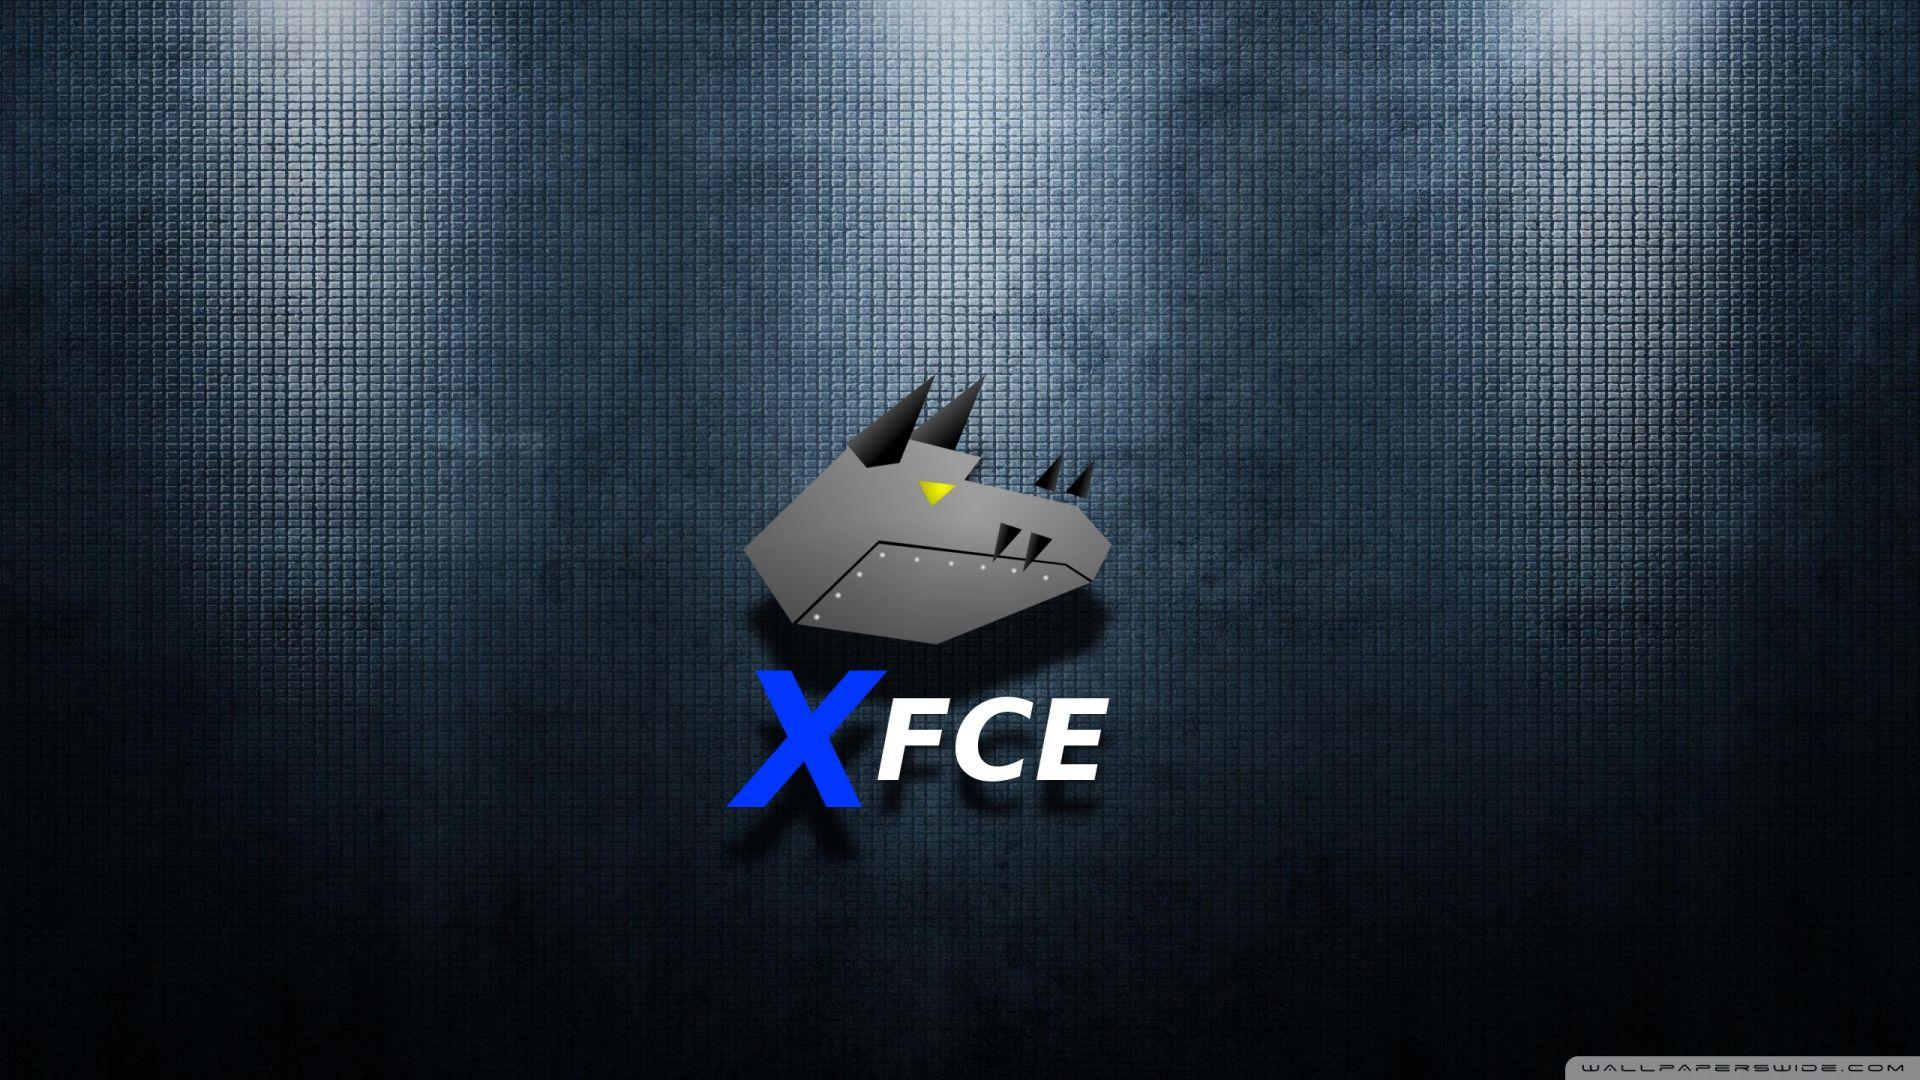 Hình nền Xfce: Xfce là giao diện máy tính phổ biến được ưa chuộng bởi sự nhẹ nhàng và linh hoạt. Những hình nền Xfce đẹp mắt này sẽ mang lại một trải nghiệm người dùng đầy thú vị cho máy tính của bạn.